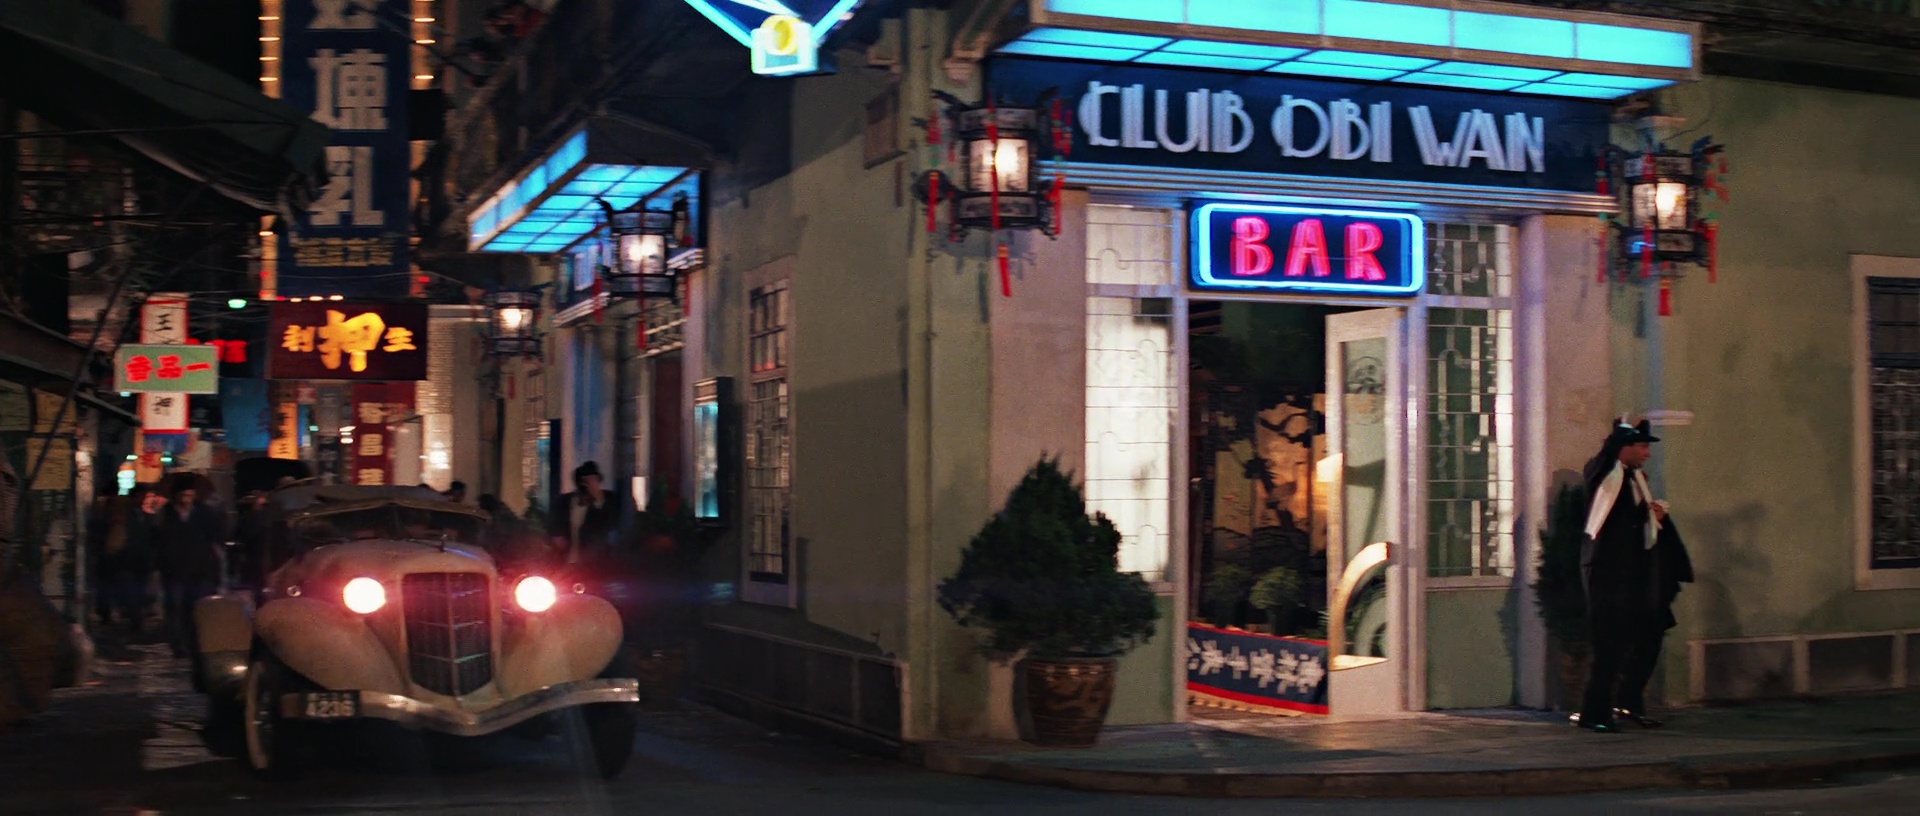 Resultado de imagem para obi wan bar scene